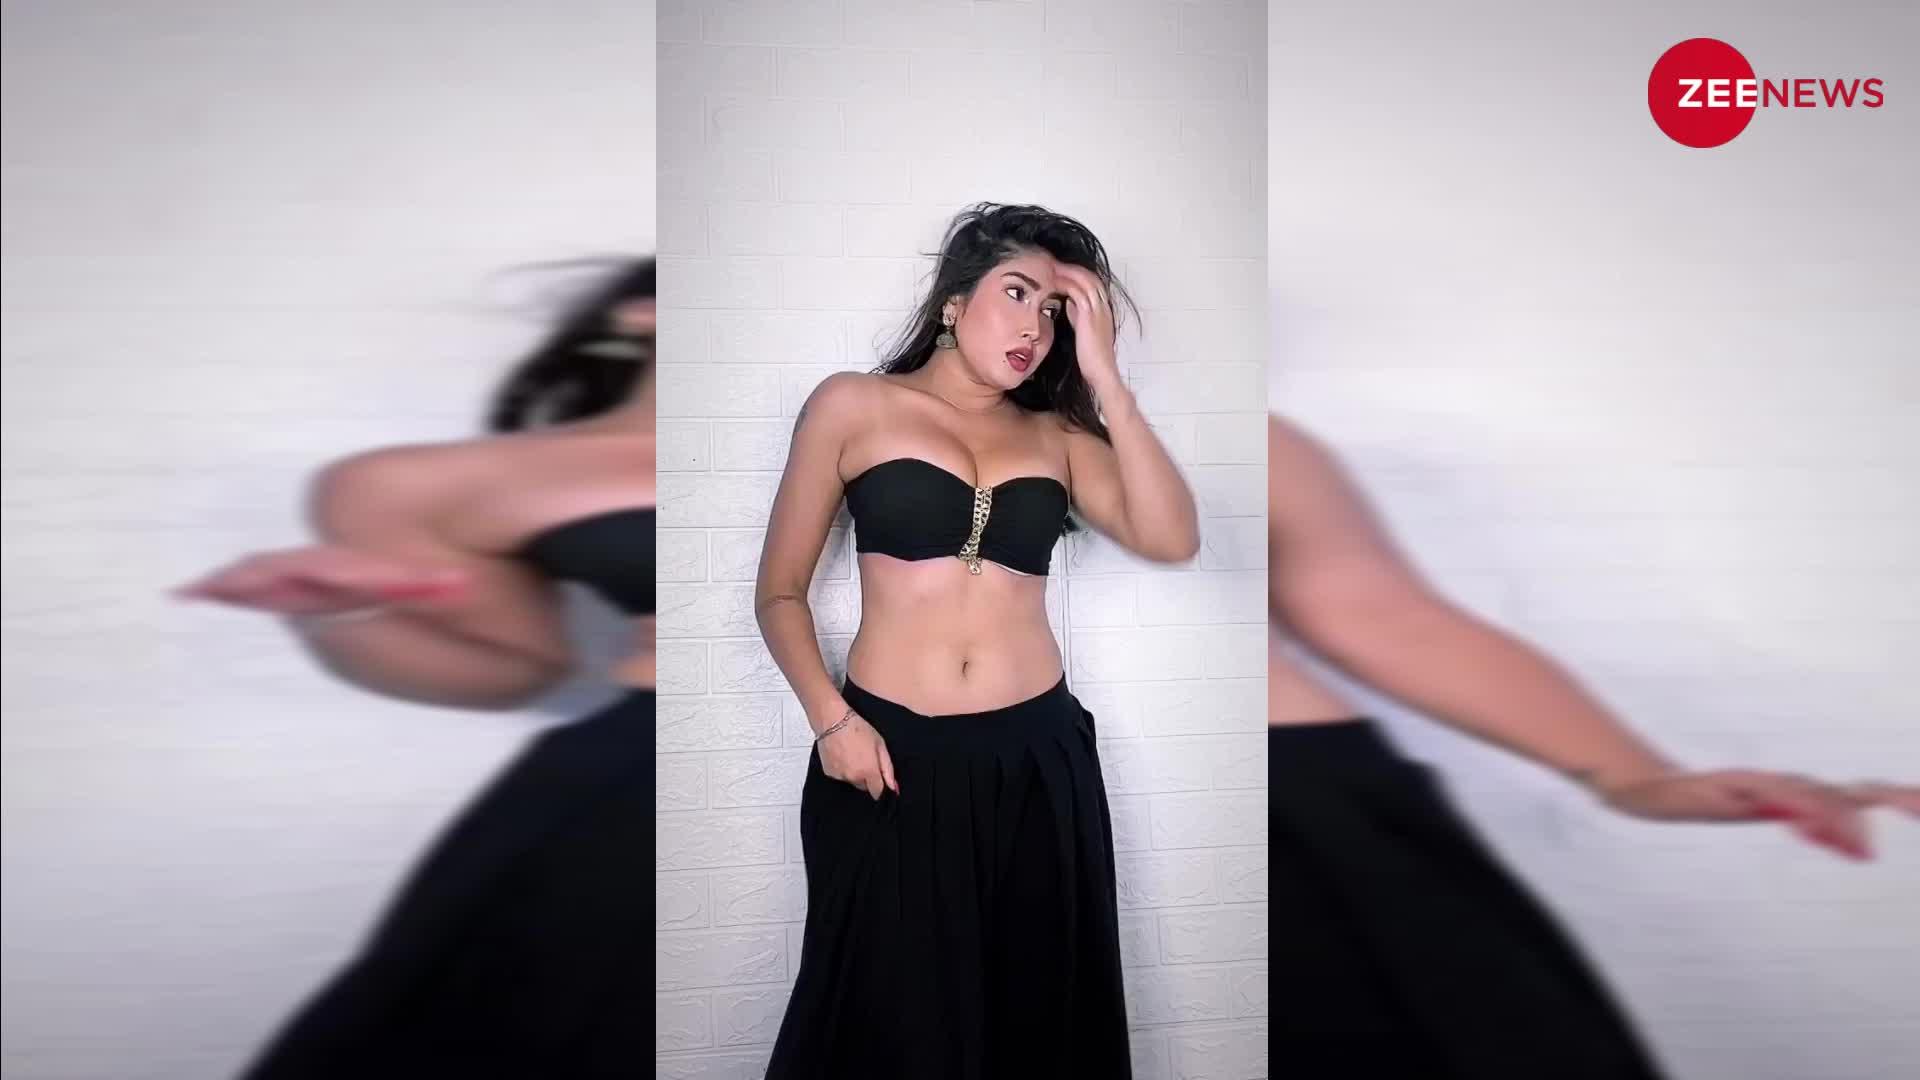 सोशल मीडिया की क्वीन Sofia Ansari ने डांस करते समय दिखाए कातिलाना मूव्स, देख मदहोश हुए फैंस